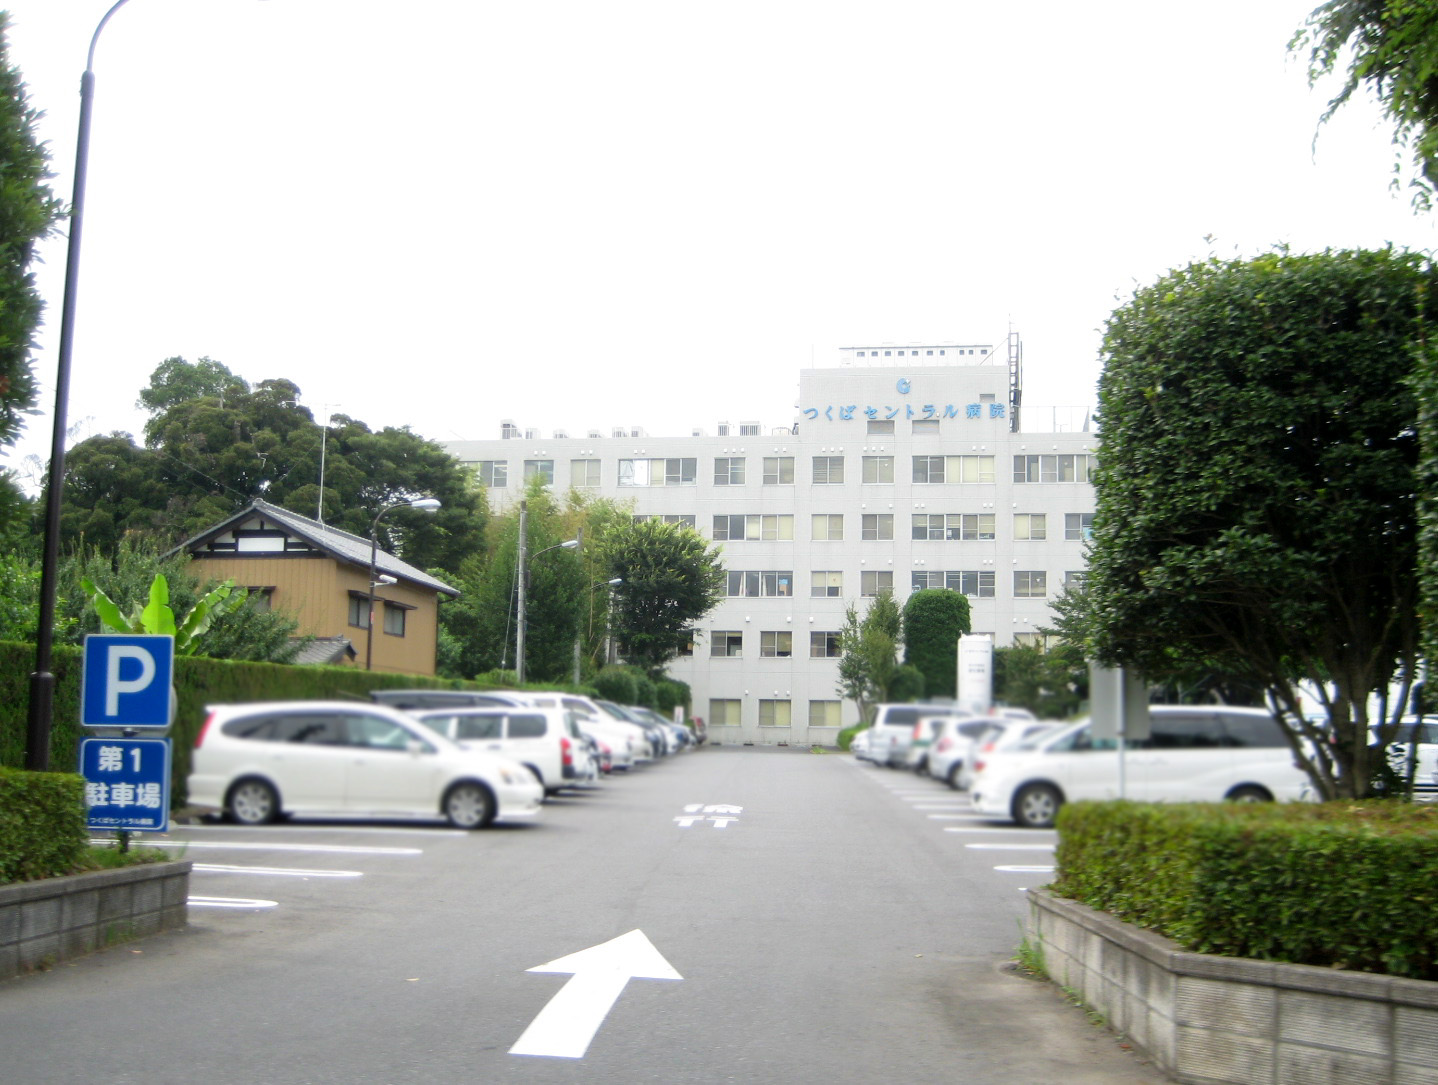 Hospital. 640m to Tsukuba Central Hospital (Hospital)